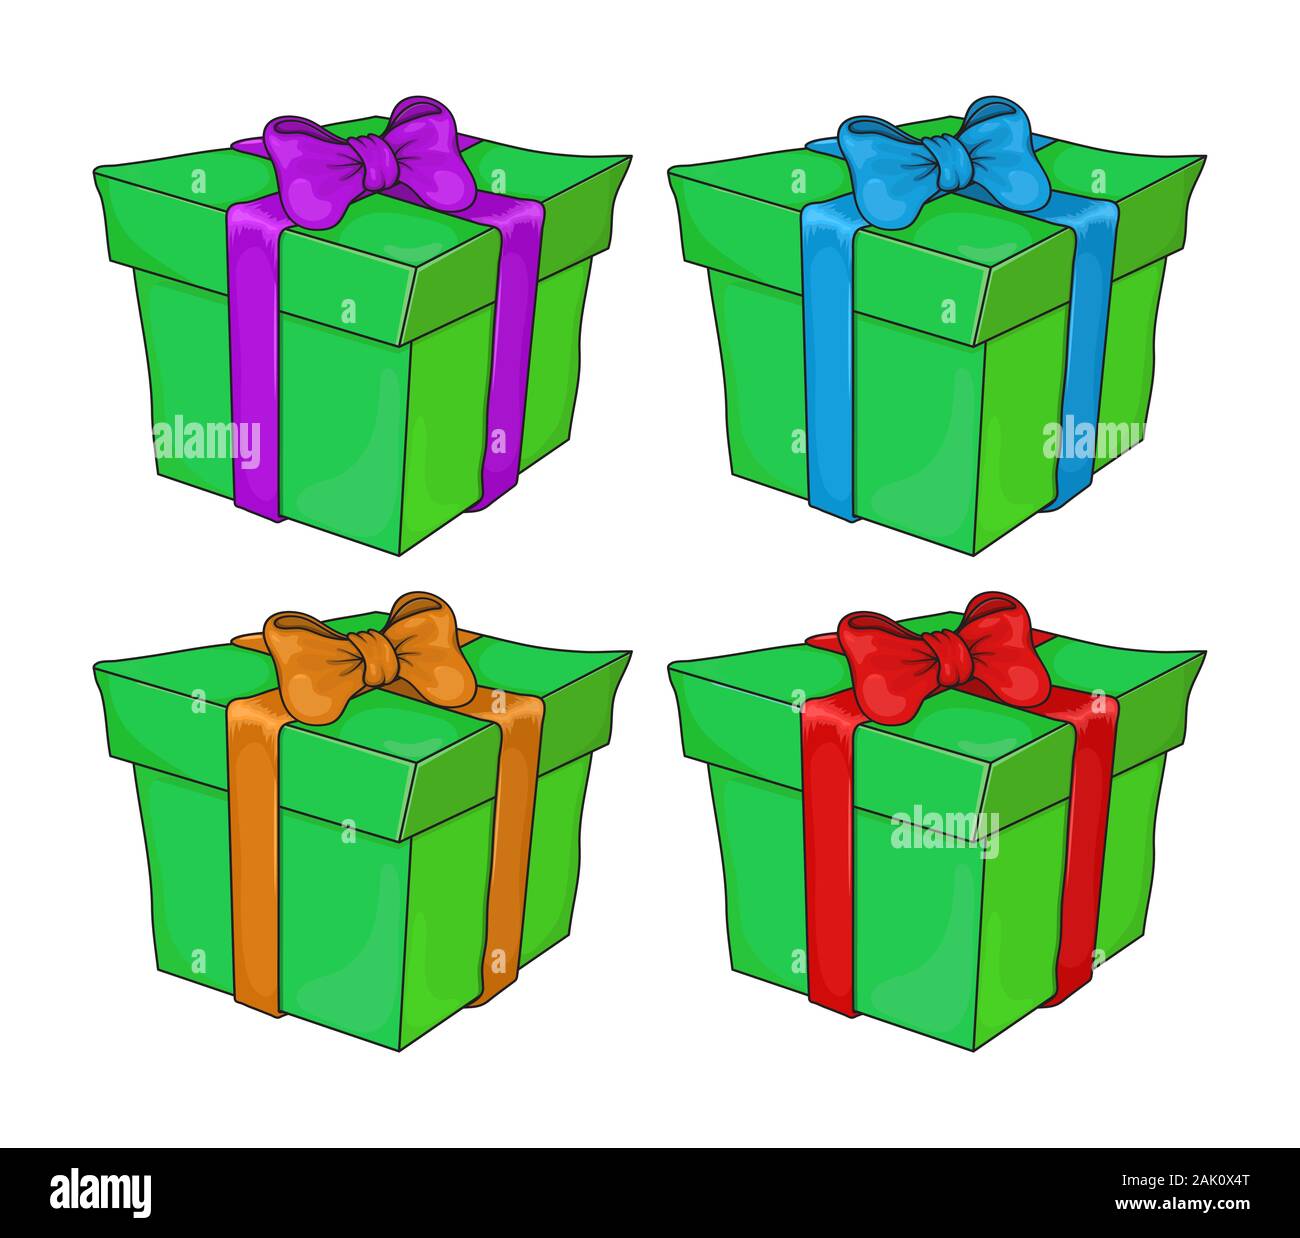 Weihnachten Geschenk Box cartoon Element festlegen. Grüne nettes Weihnachtsgeschenk mit Spitze und Schleife gebunden. Vector Illustration auf weißem Hintergrund. Stock Vektor